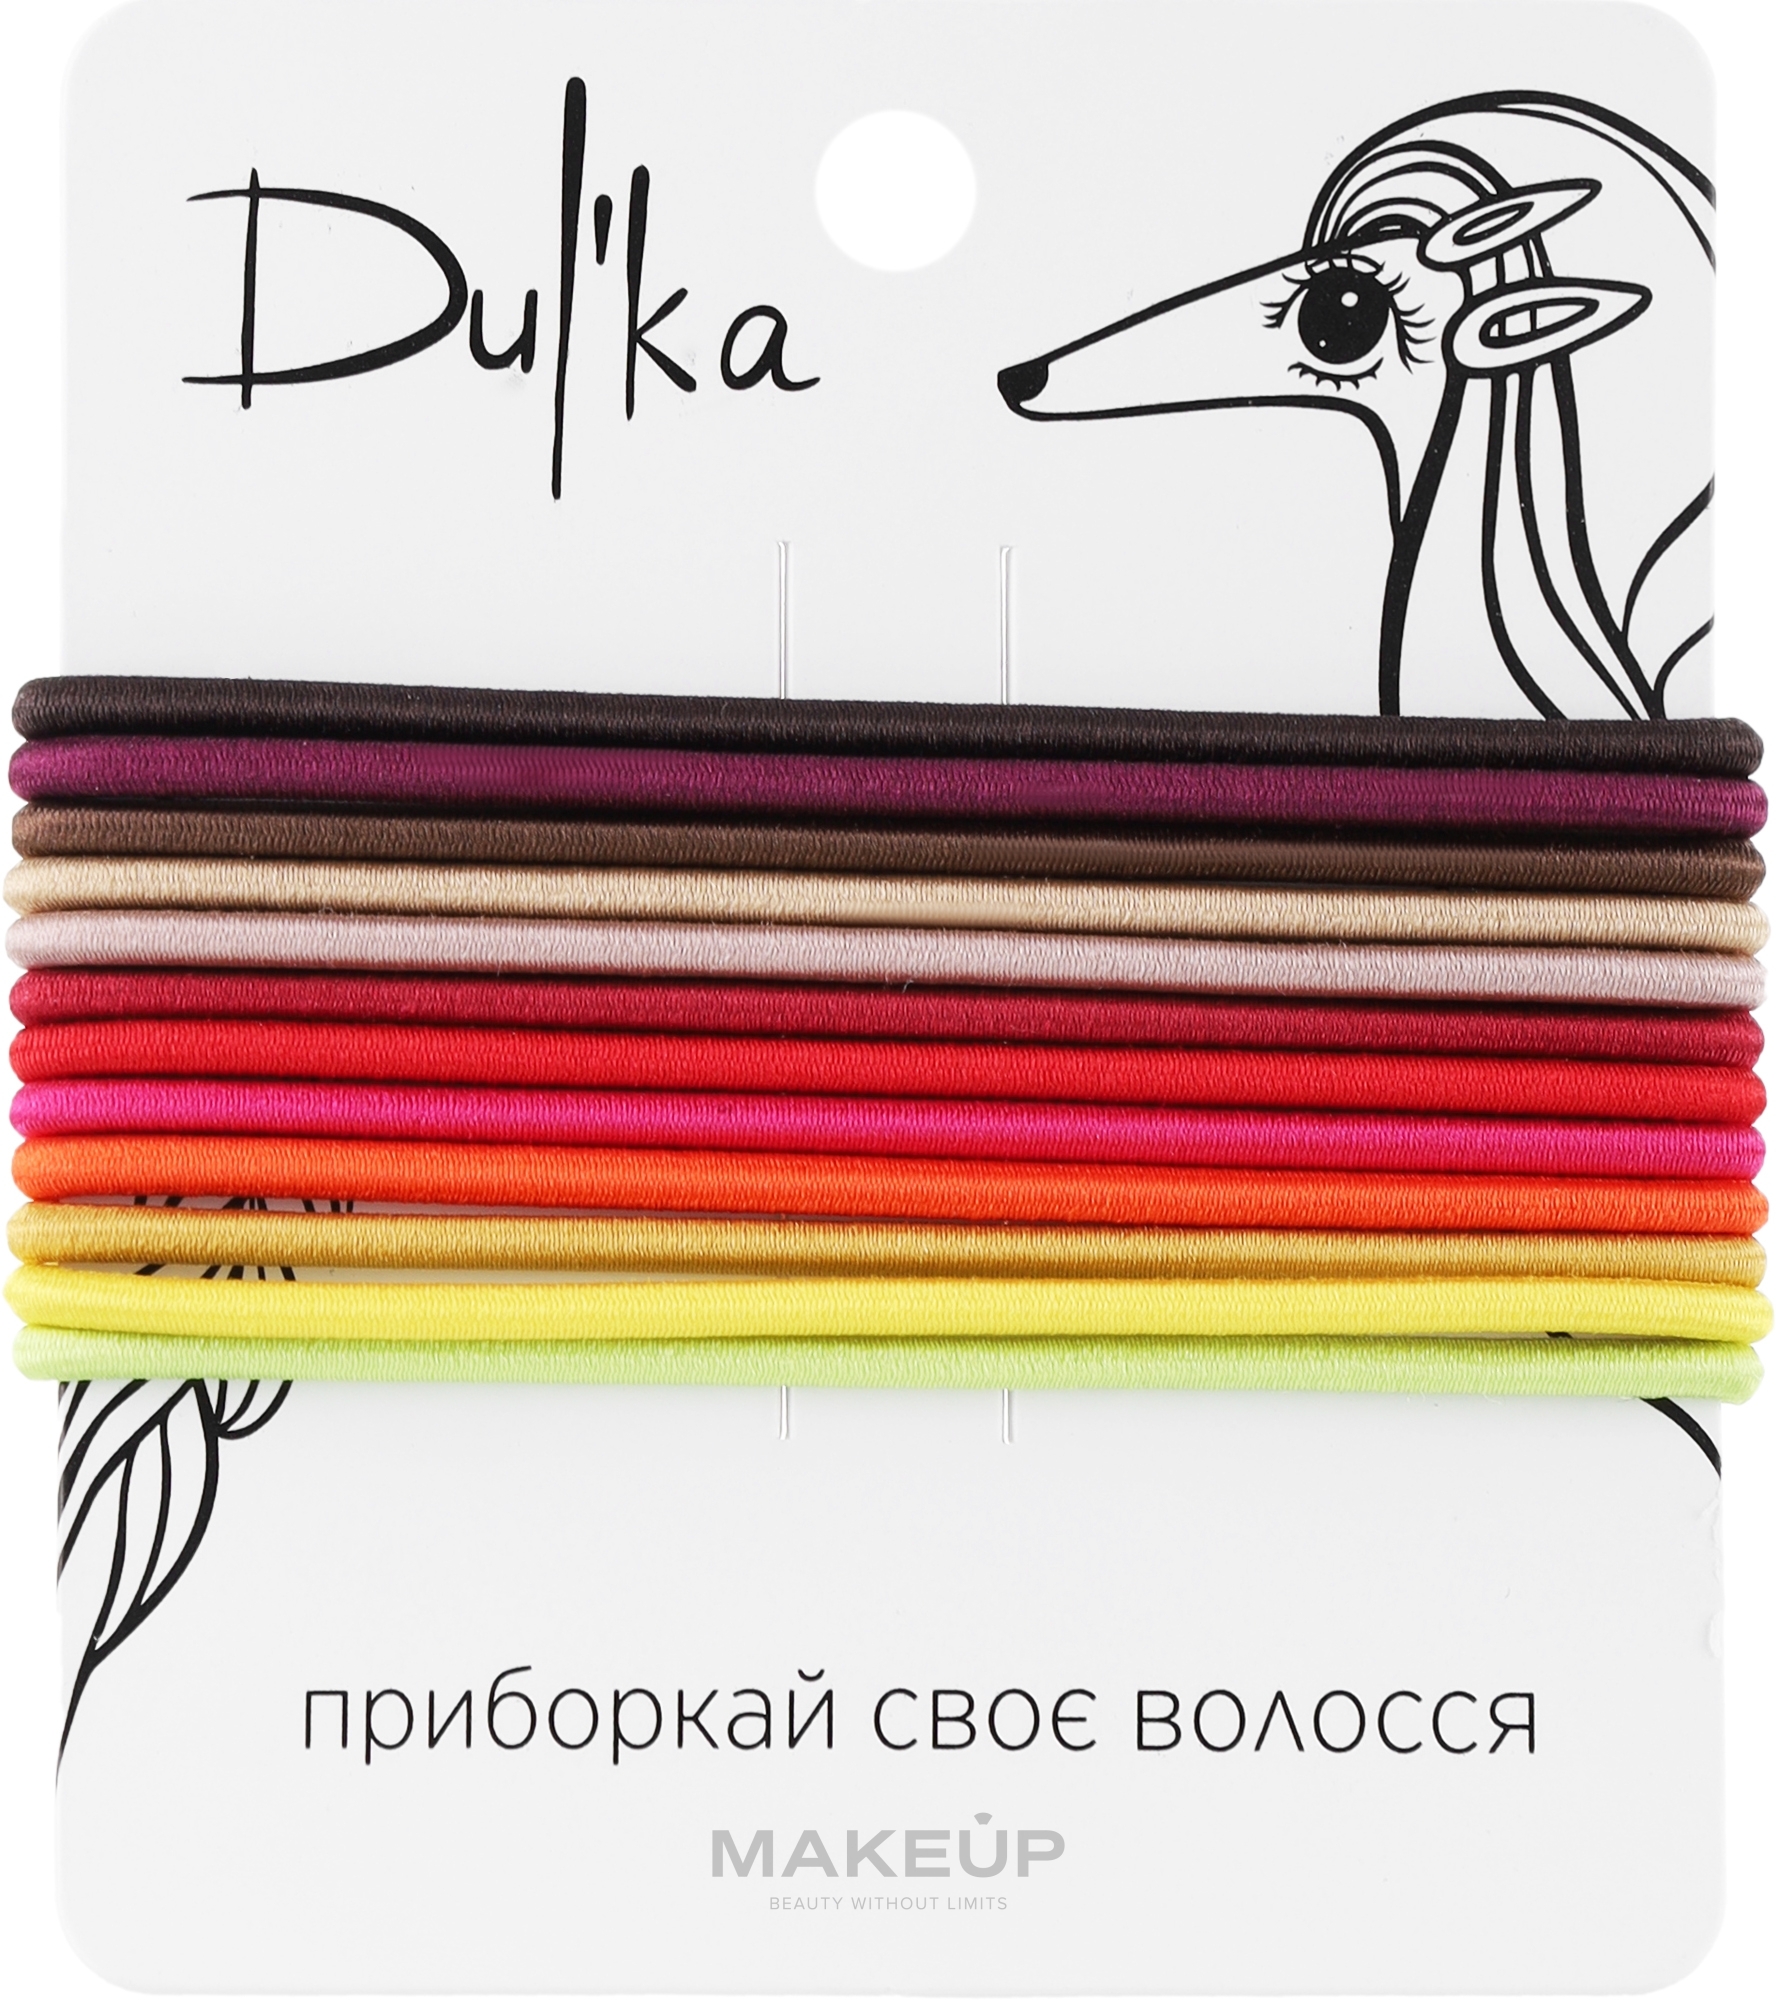 Набор разноцветных резинок для волос UH717712, 12 шт - Dulka  — фото 12шт